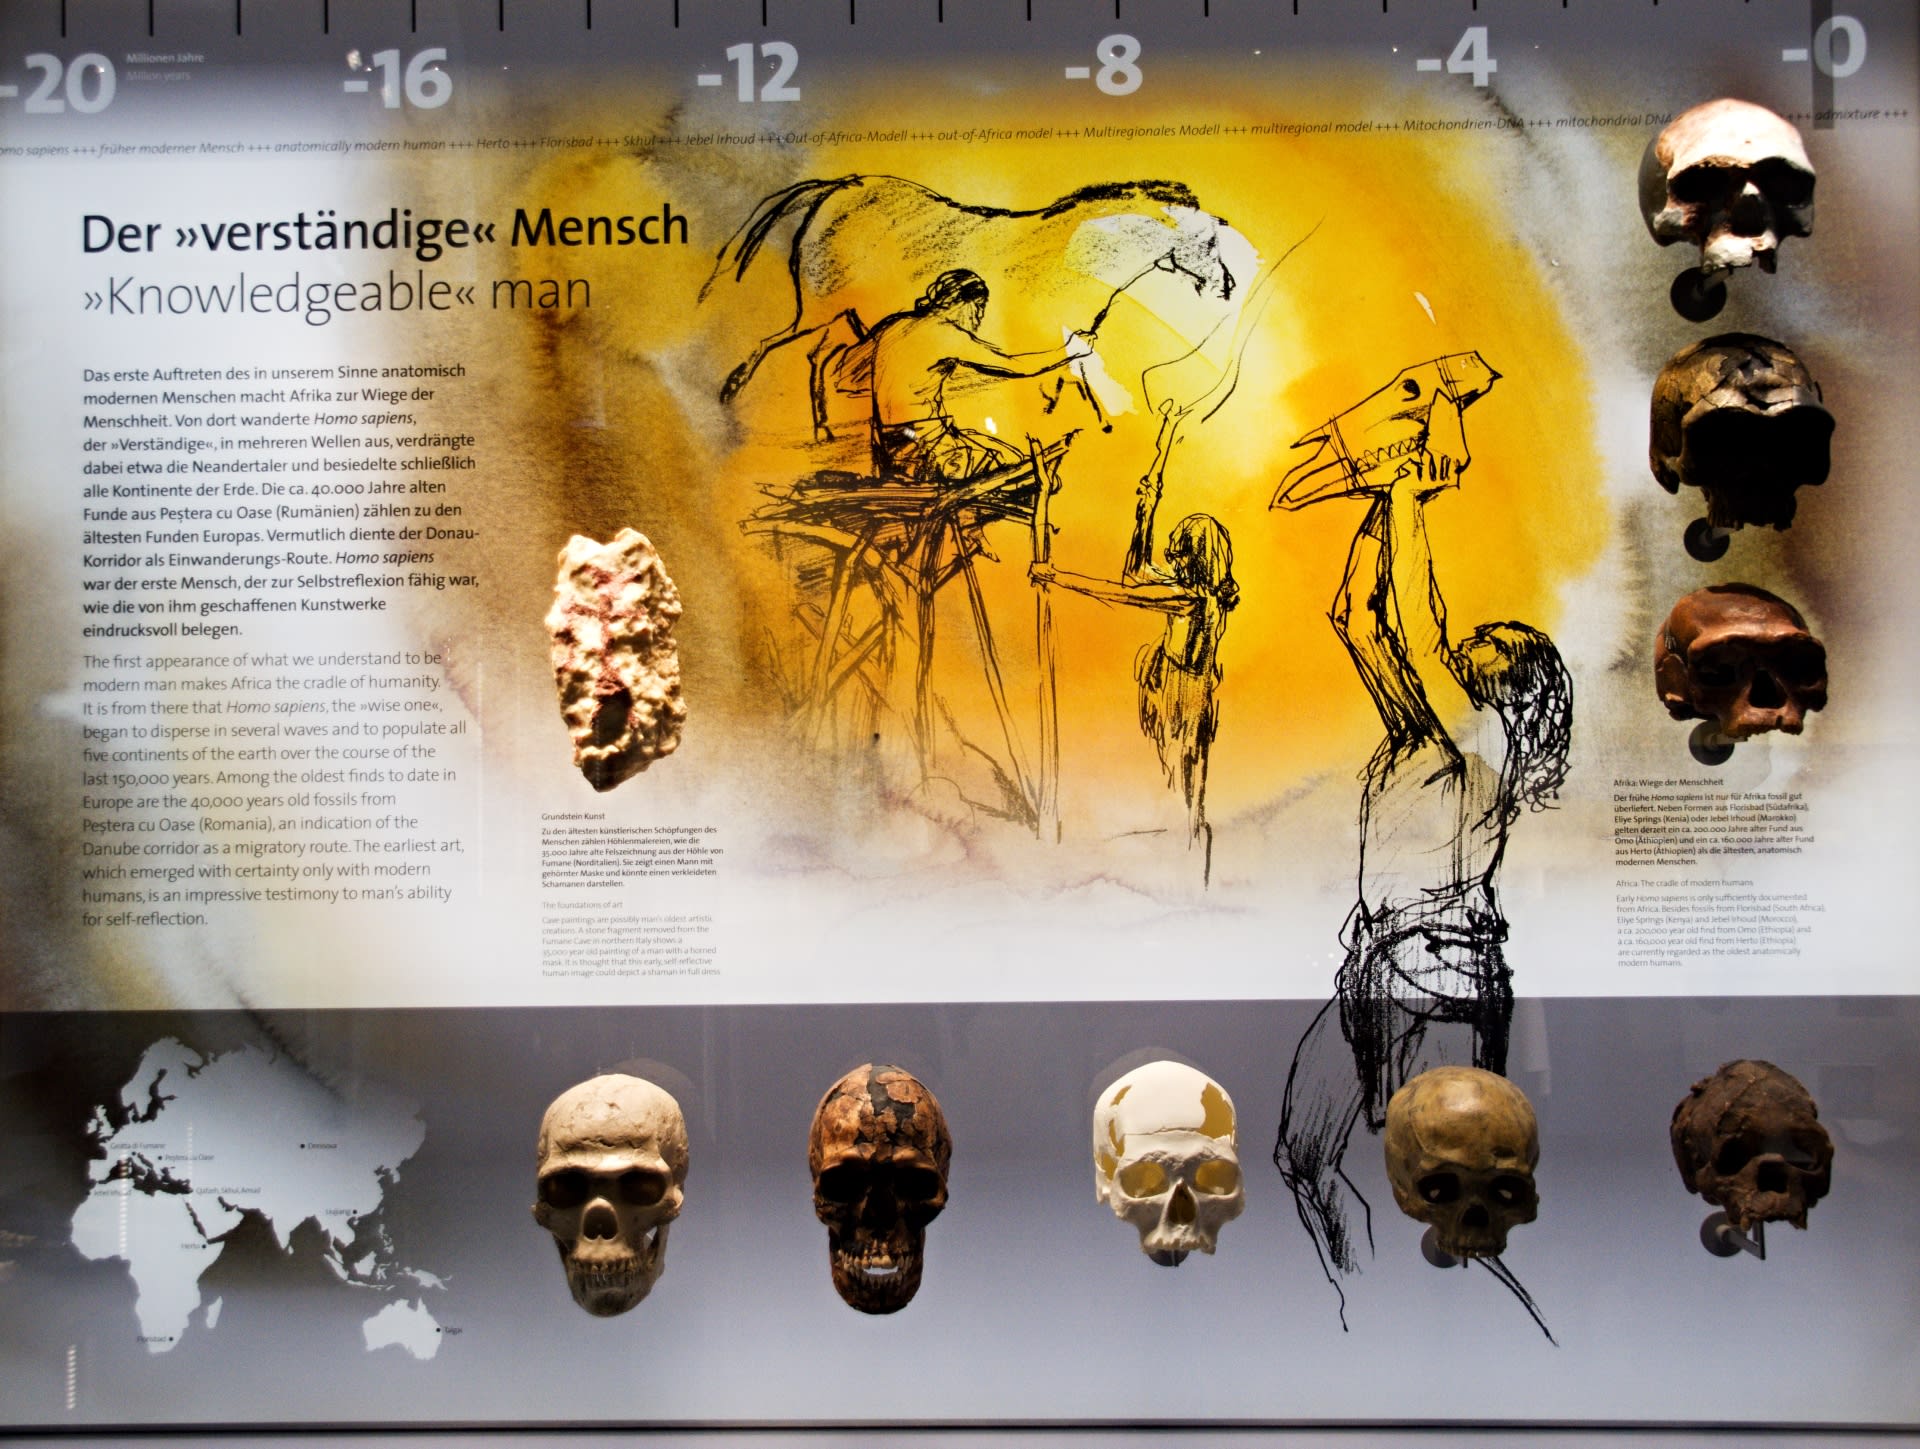 Všichni máme předky v Africe - foto z Přírodovědného muzea ve Vídni